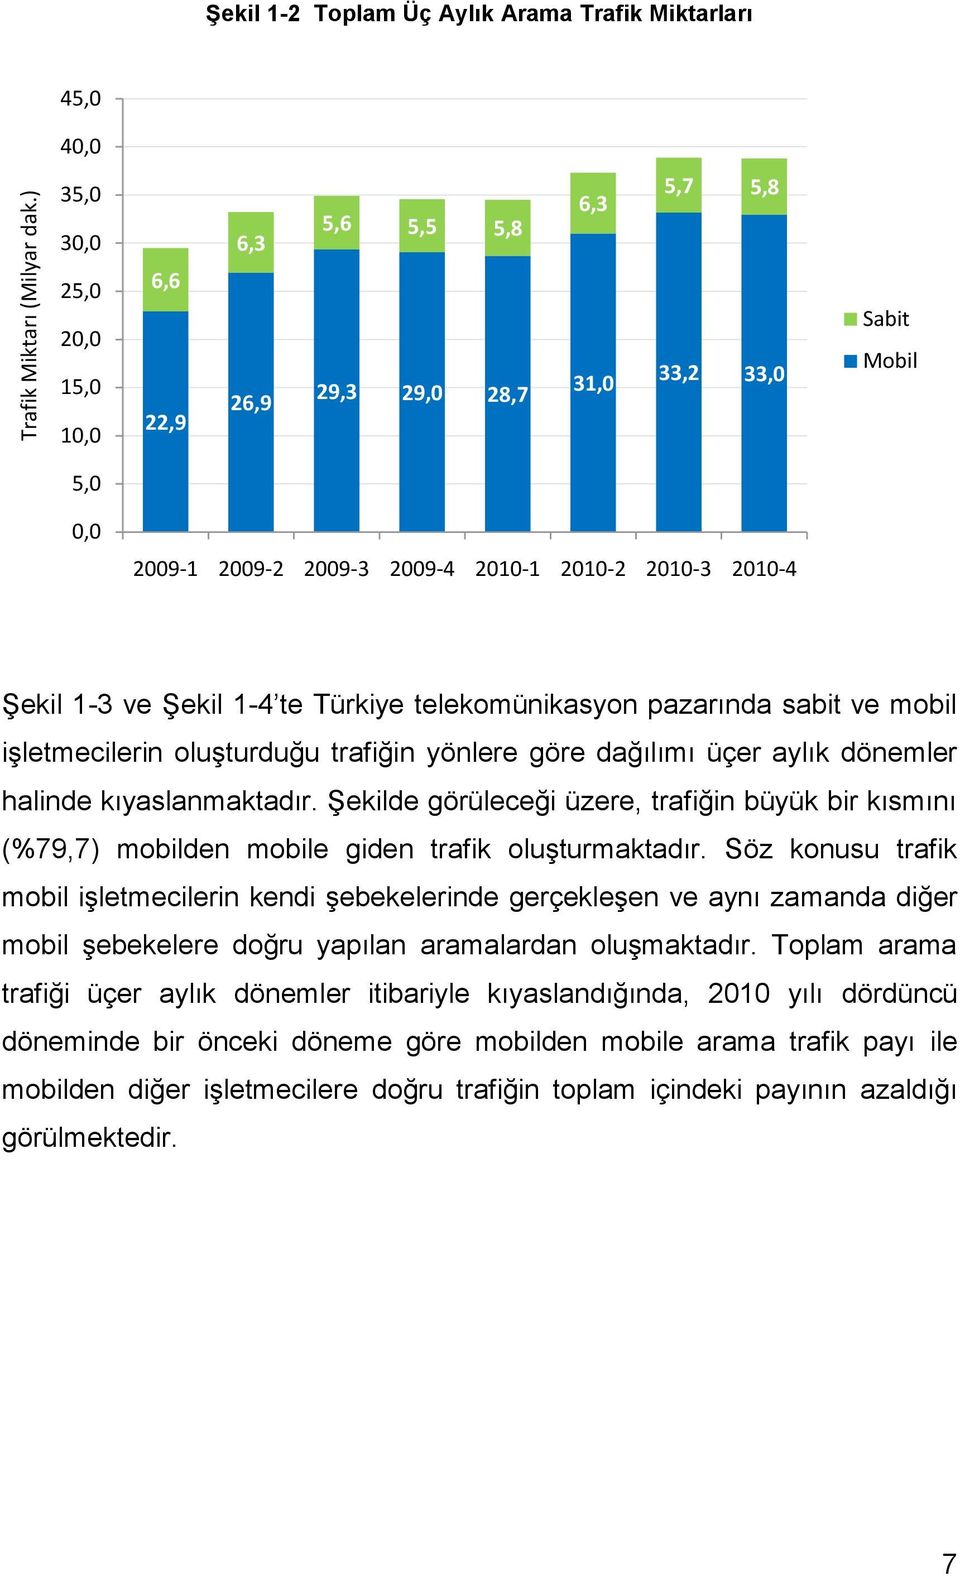 2009-3 2009-4 2010-1 2010-2 2010-3 2010-4 Şekil 1-3 ve Şekil 1-4 te Türkiye telekomünikasyon pazarında sabit ve mobil işletmecilerin oluşturduğu trafiğin yönlere göre dağılımı üçer aylık dönemler